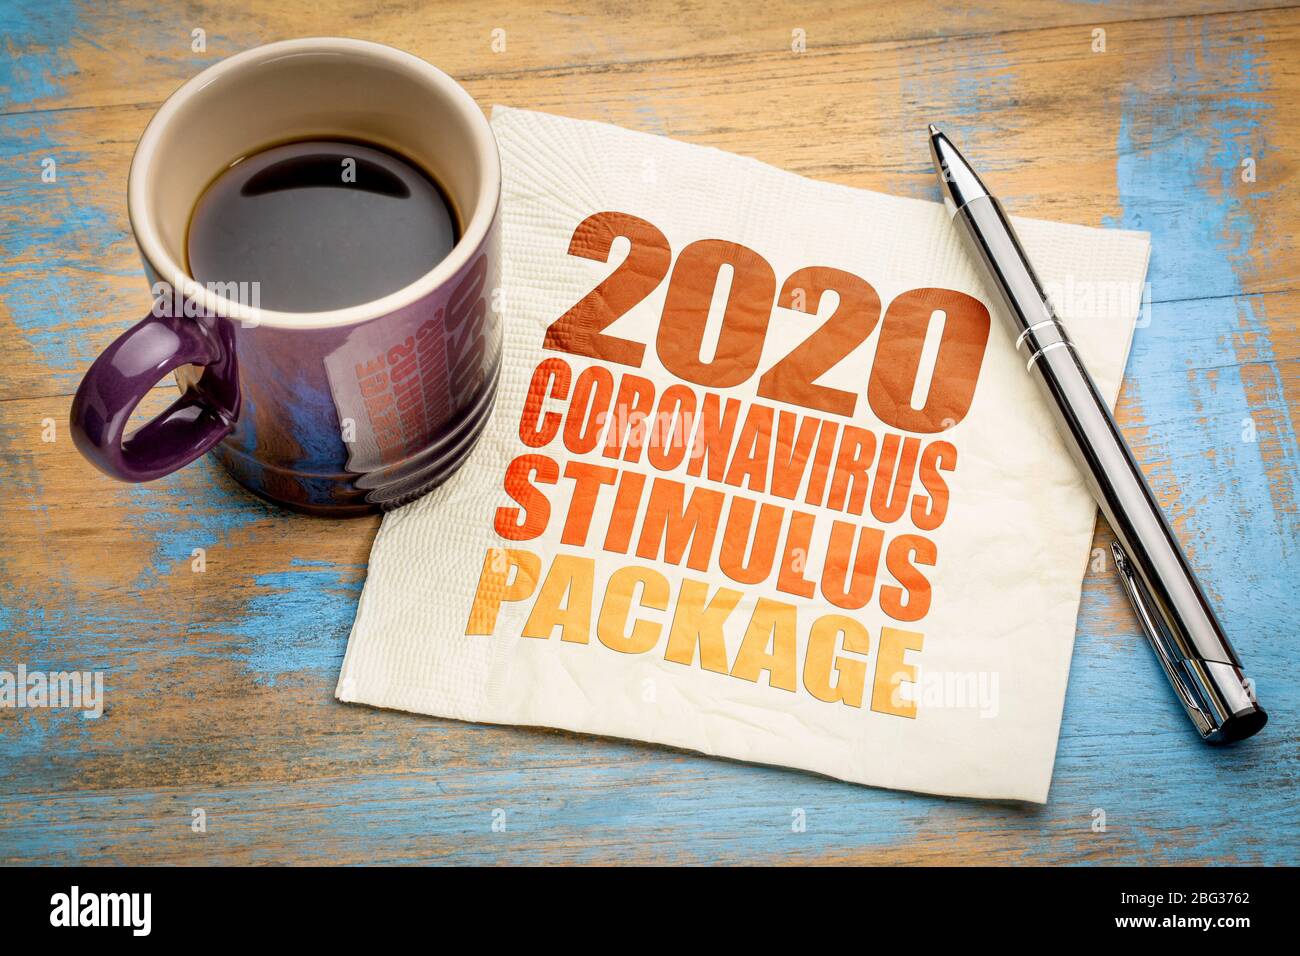 2020 Coronavirus Stimulus Paket Wort abstrakt auf einer Serviette mit einer Tasse Kaffee, Entlastungsgesetz während Covid-19 Pandemie und Rezession Stockfoto